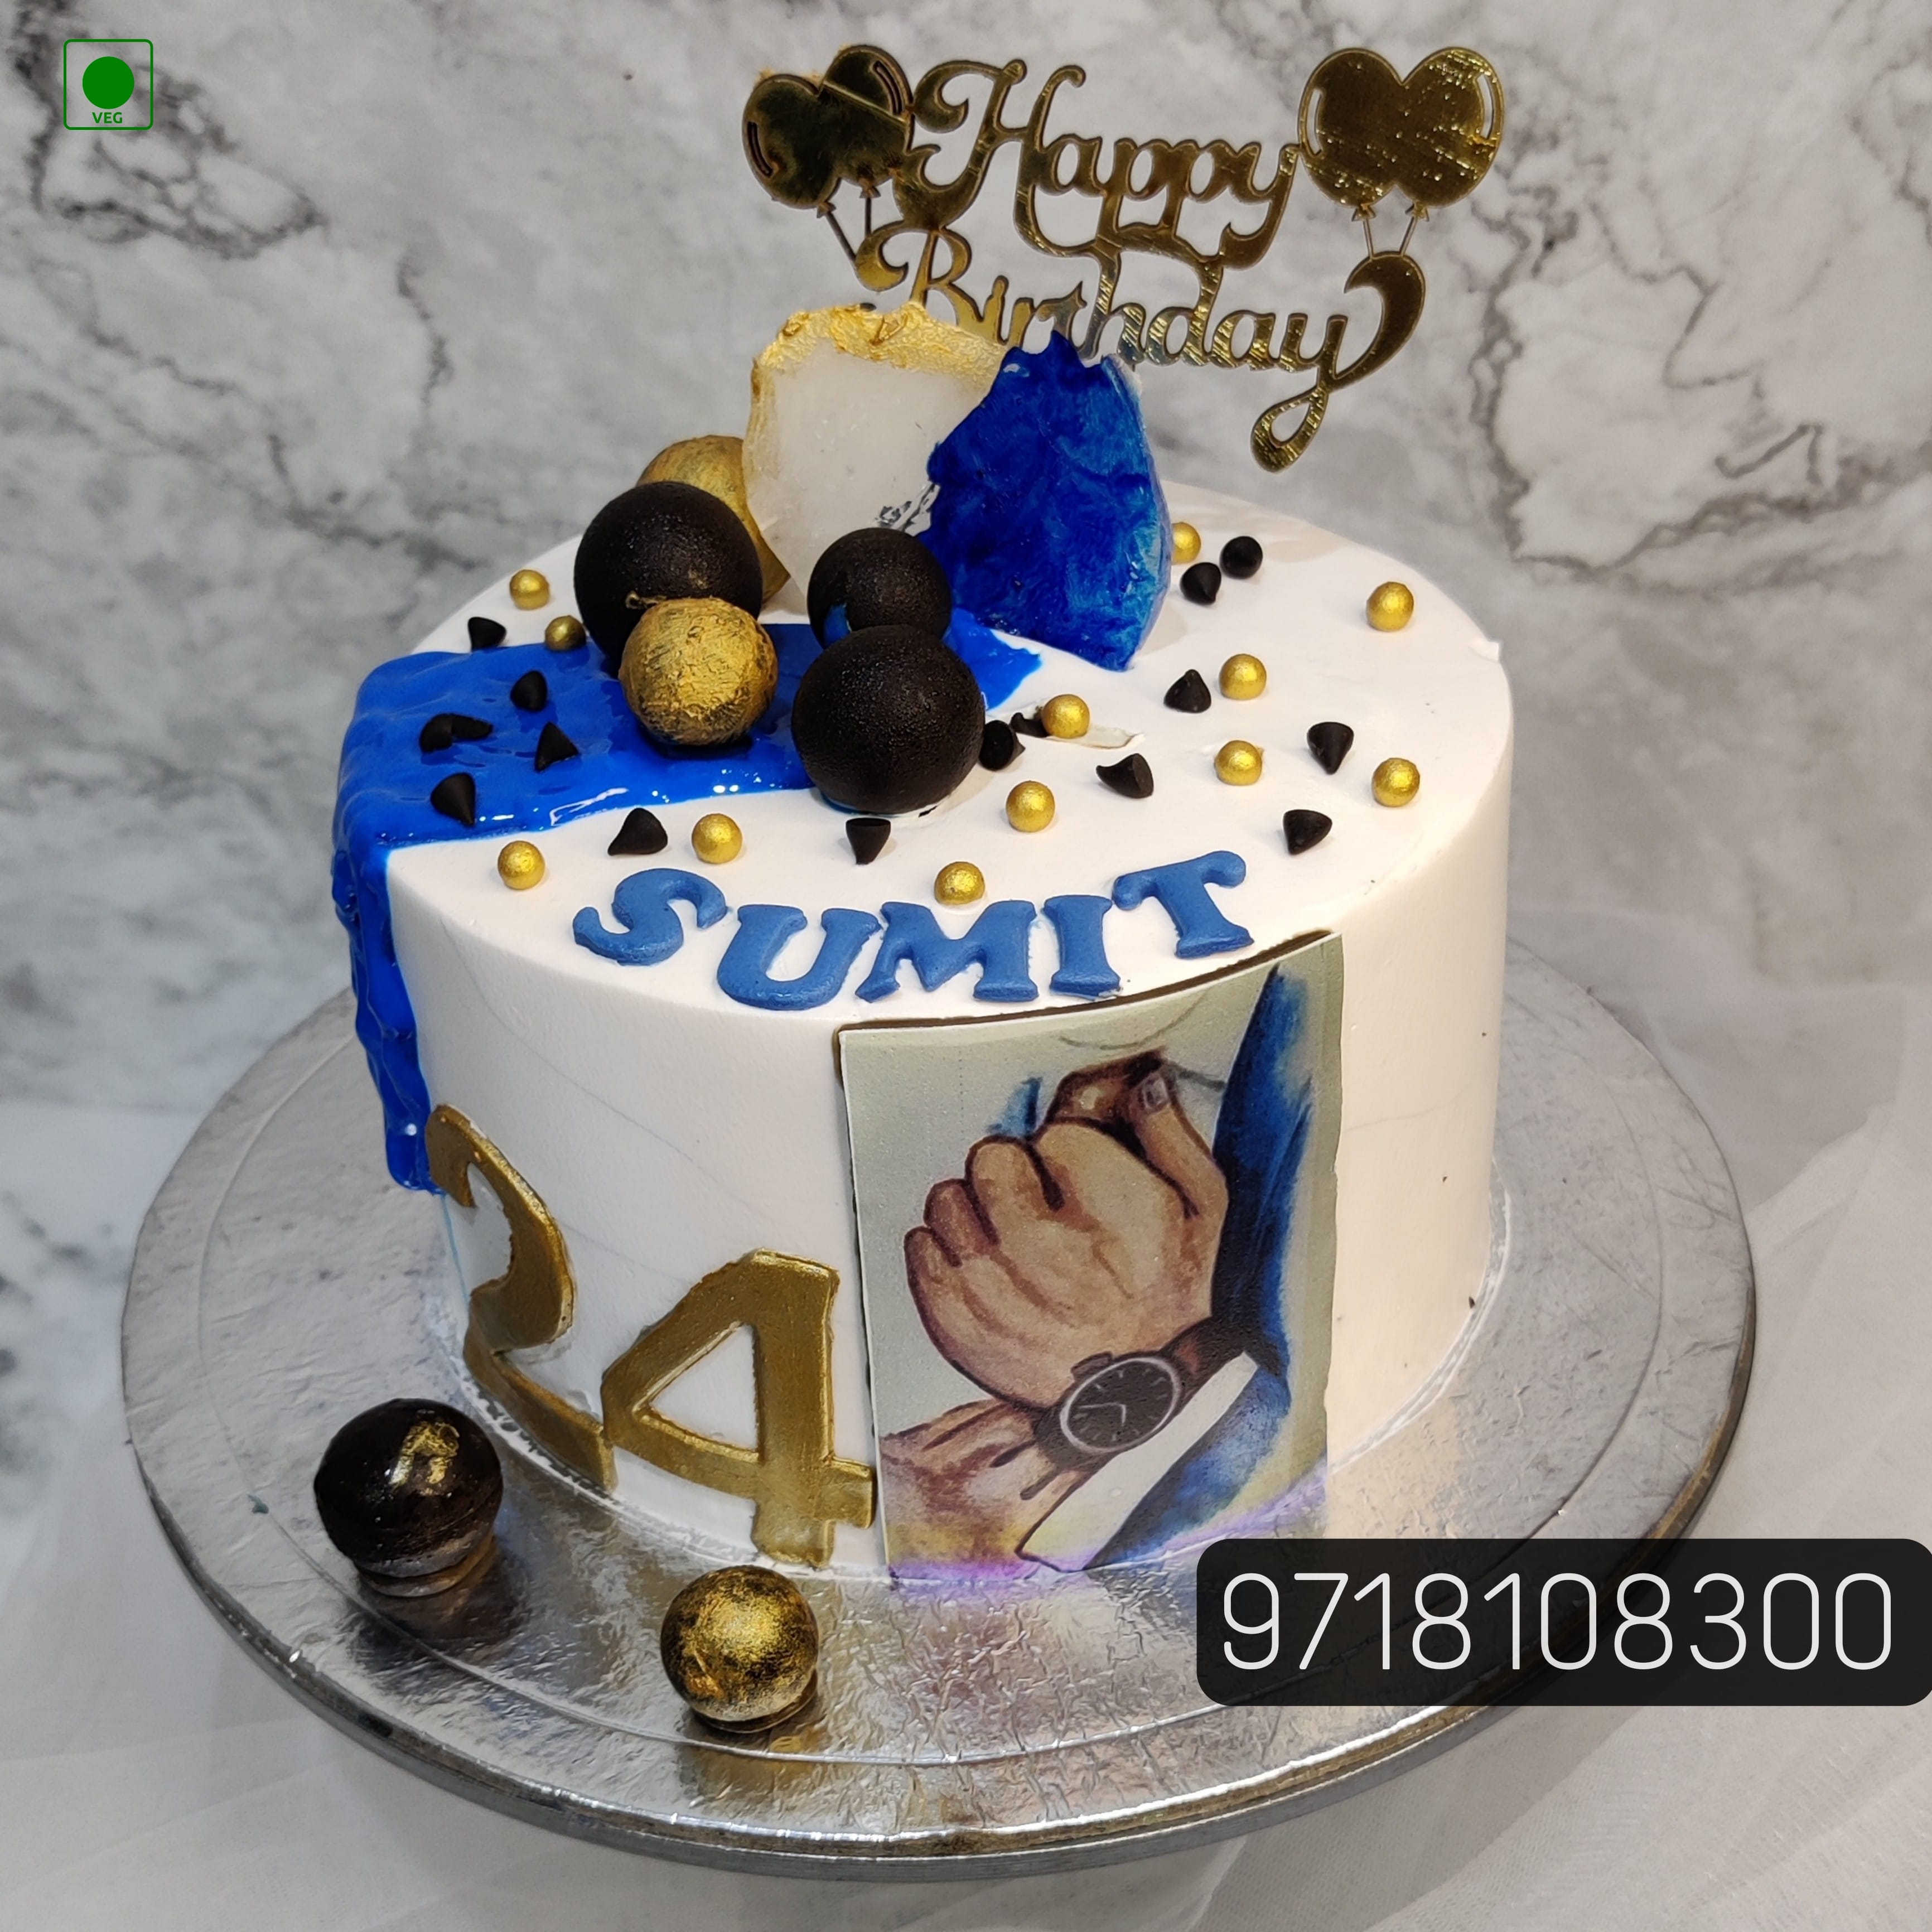 Designer birthday cake for husband | Birthday cake for husband | Gocakes